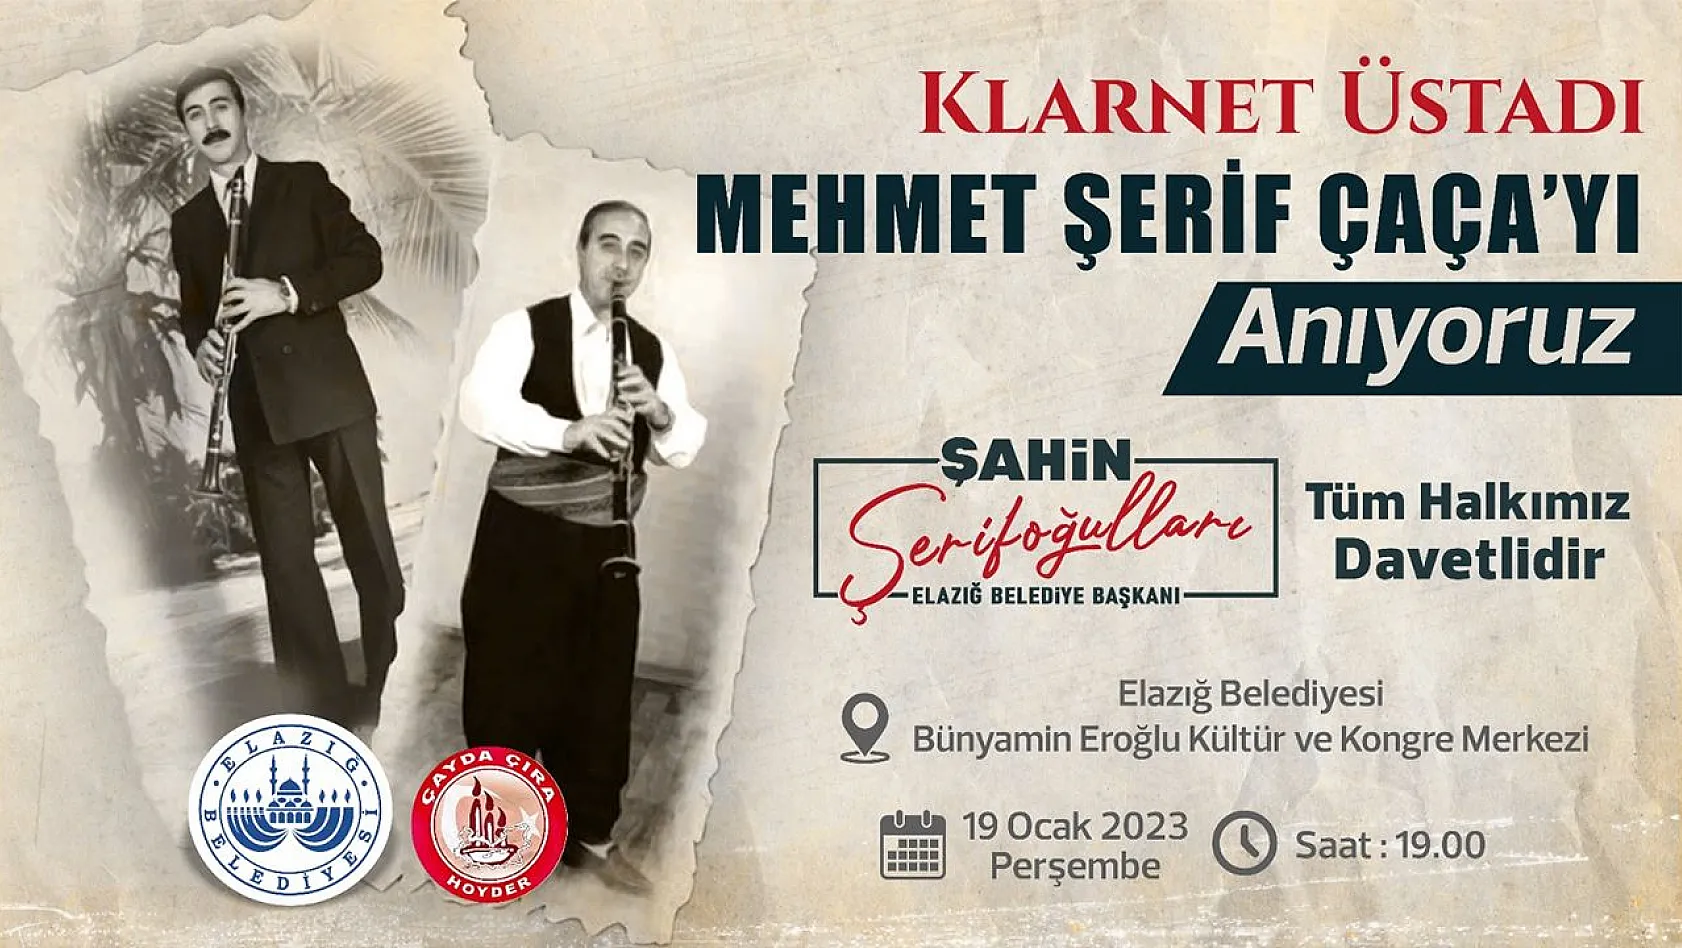 Elazığ Belediyesi, Klarnet Üstadı Mehmet Şerif Çaça (Çeçen)'Ne Anma Programı Düzenleyecek